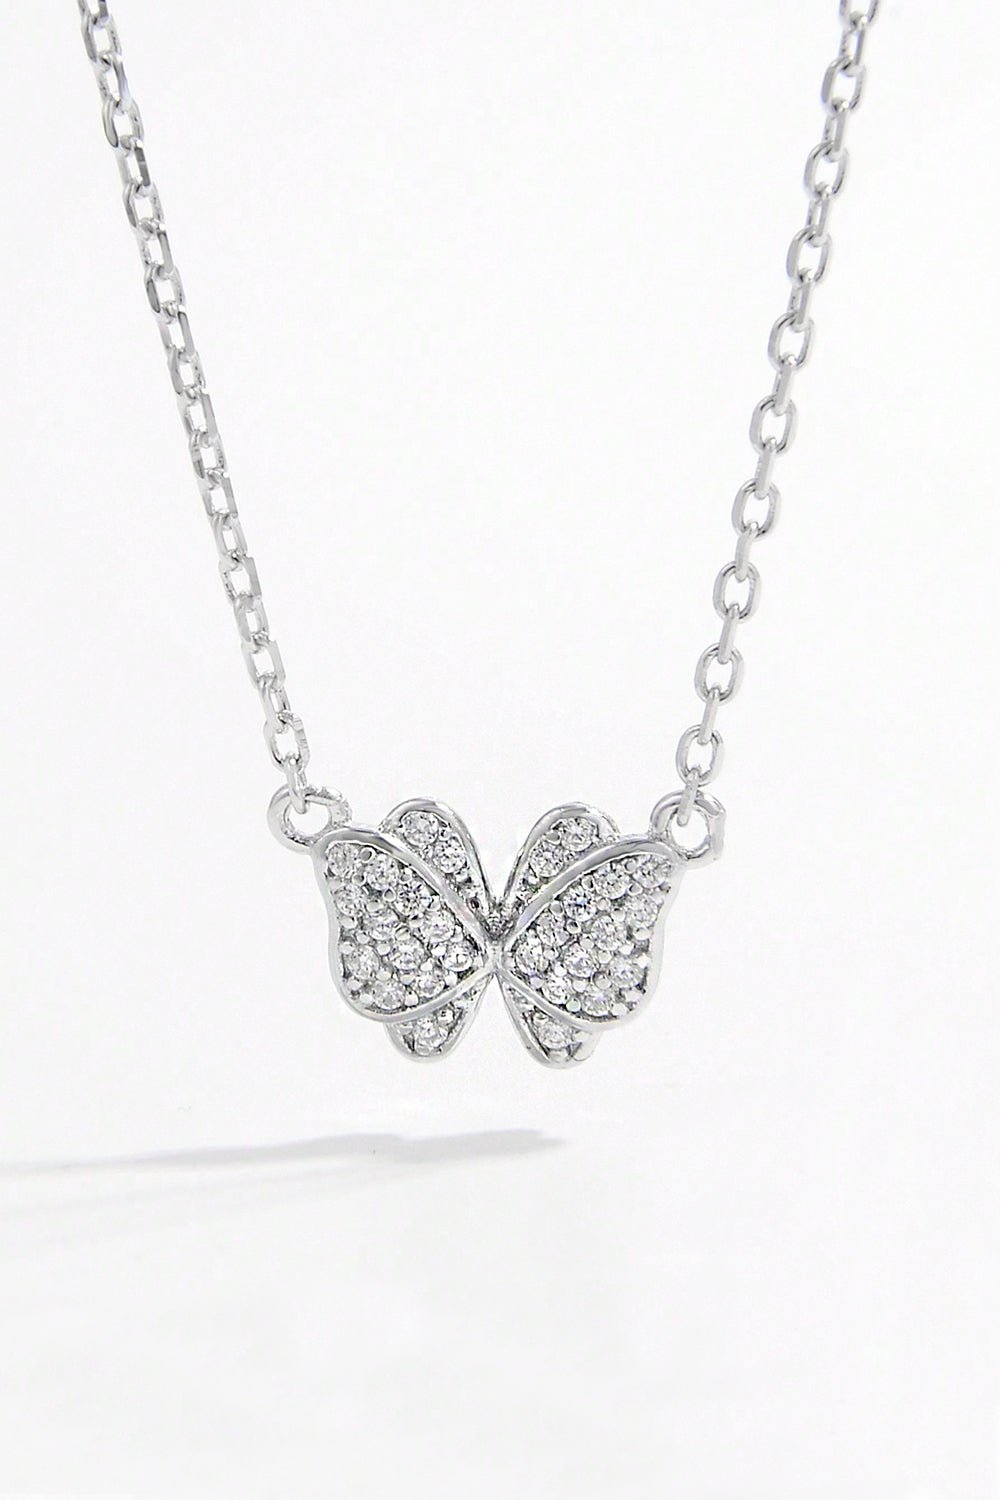 Silver Zircon Butterfly Pendant NecklaceNecklaceBeach Rose Co.